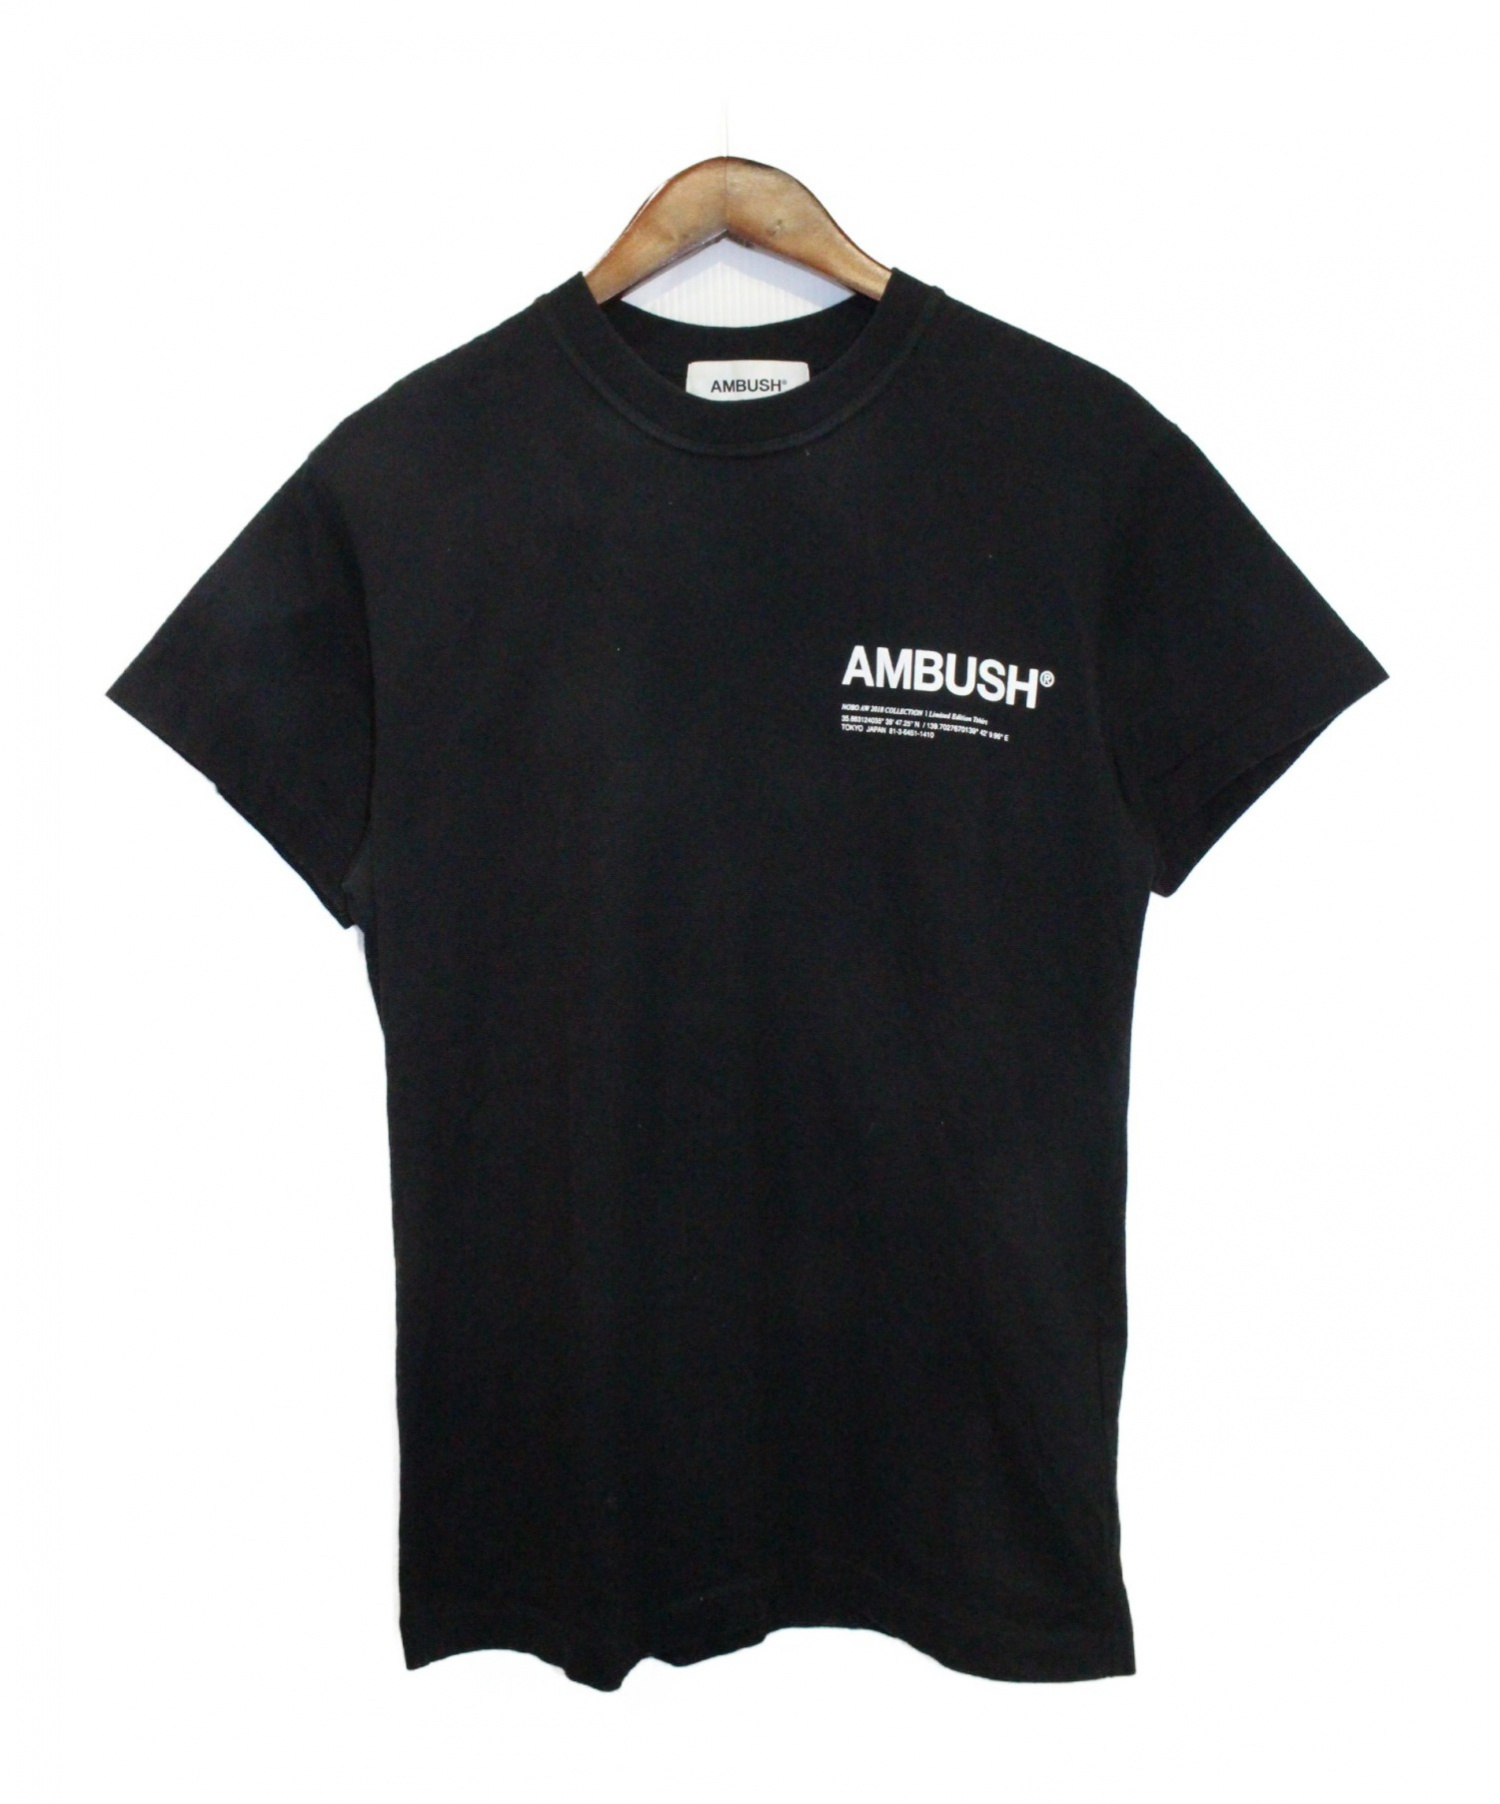 AMBUSH (アンブッシュ) Tシャツ ブラック サイズ:1